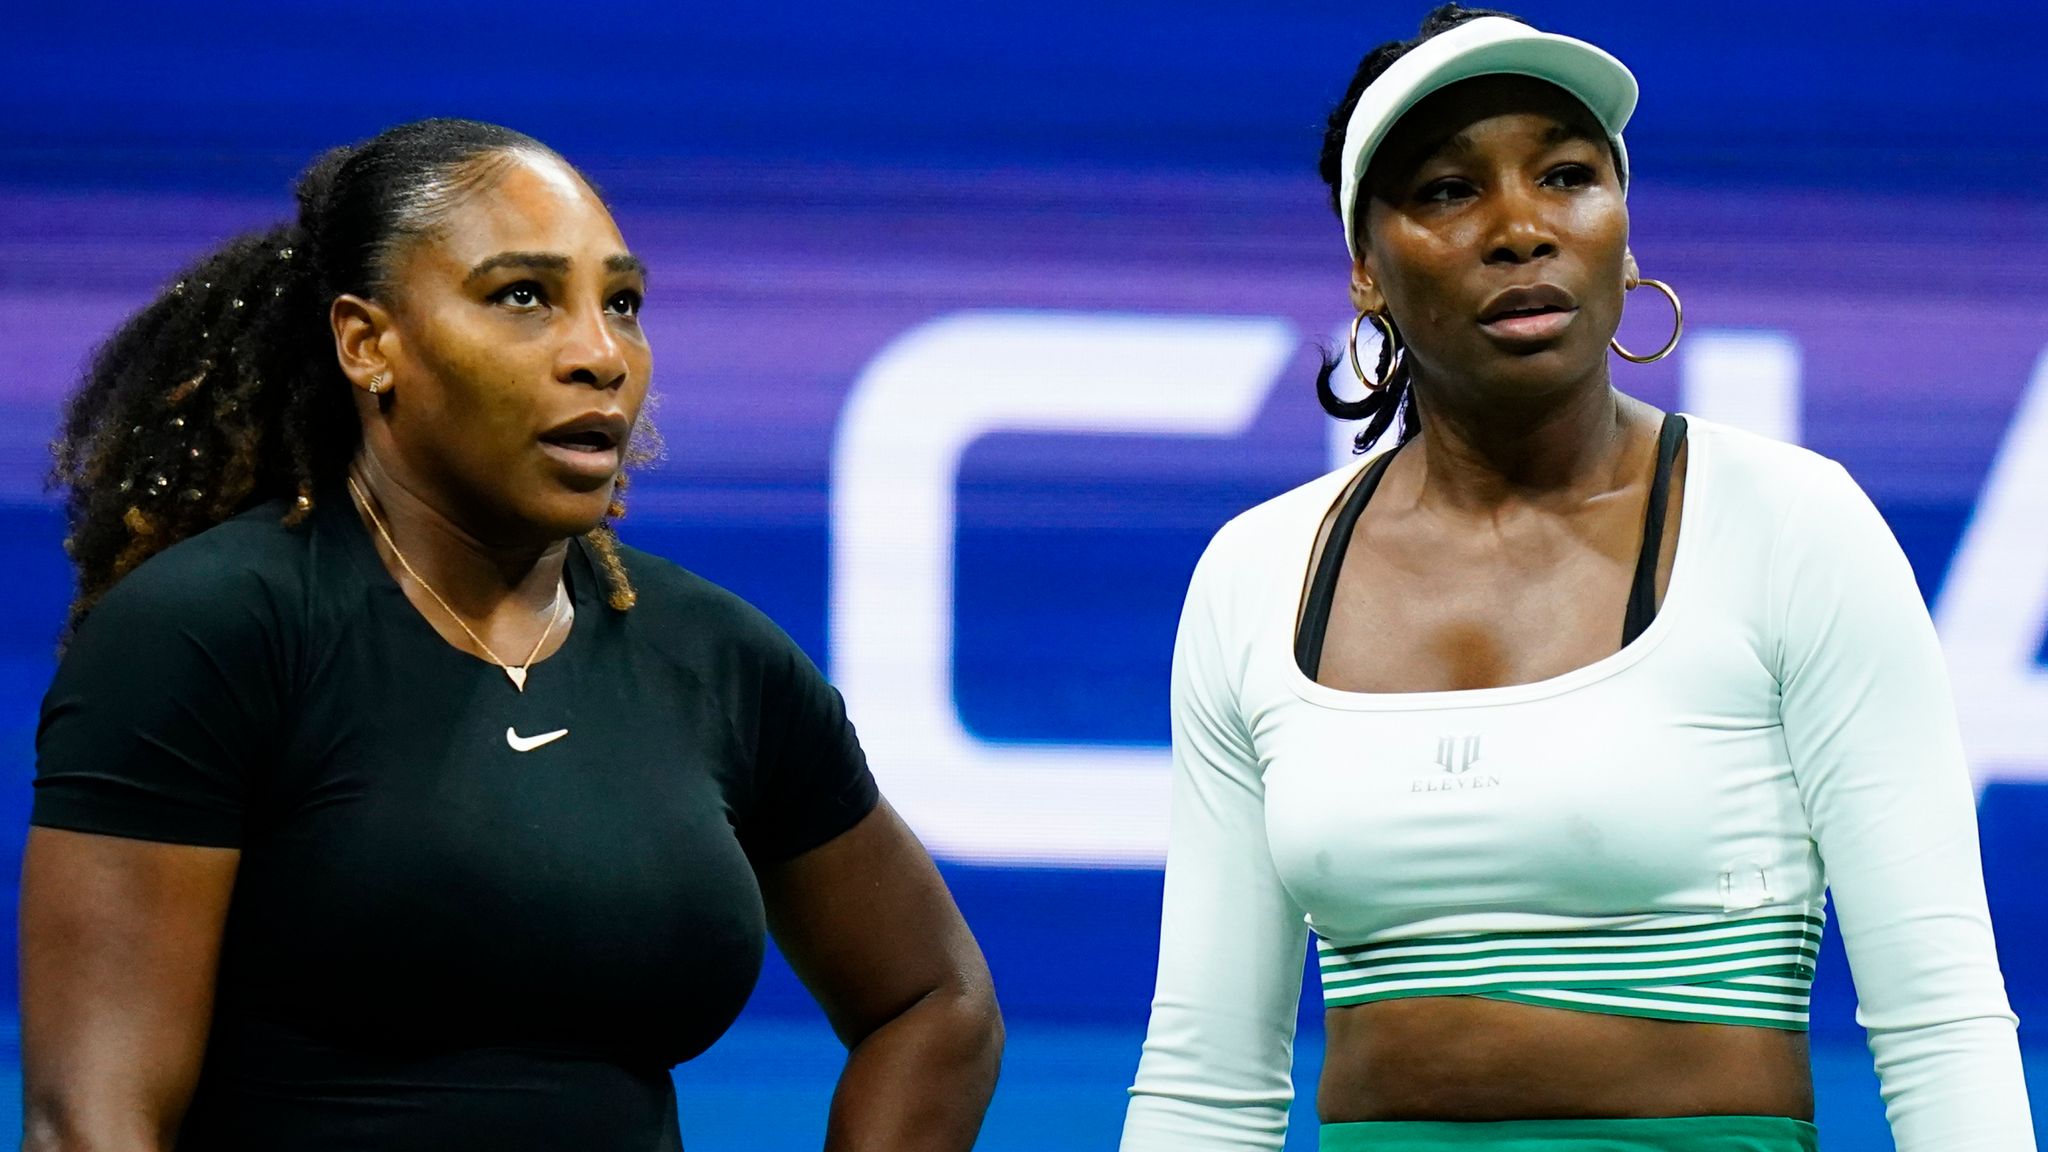 Serena Williams and Venus Williams beaten in US Open doubles Rafa Nadal survives Fabio Fognini scare Tennis News Sky Sports